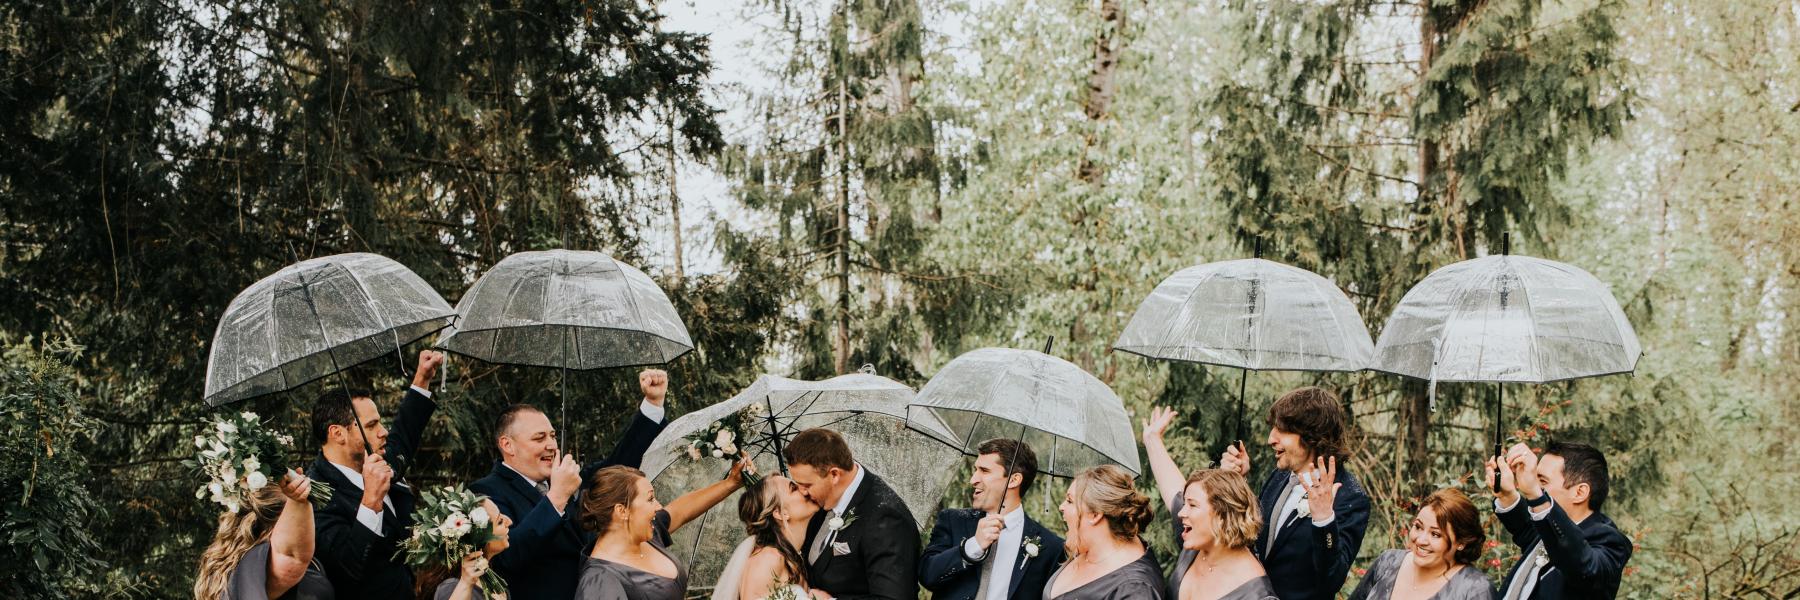 wedding party with umbrellas